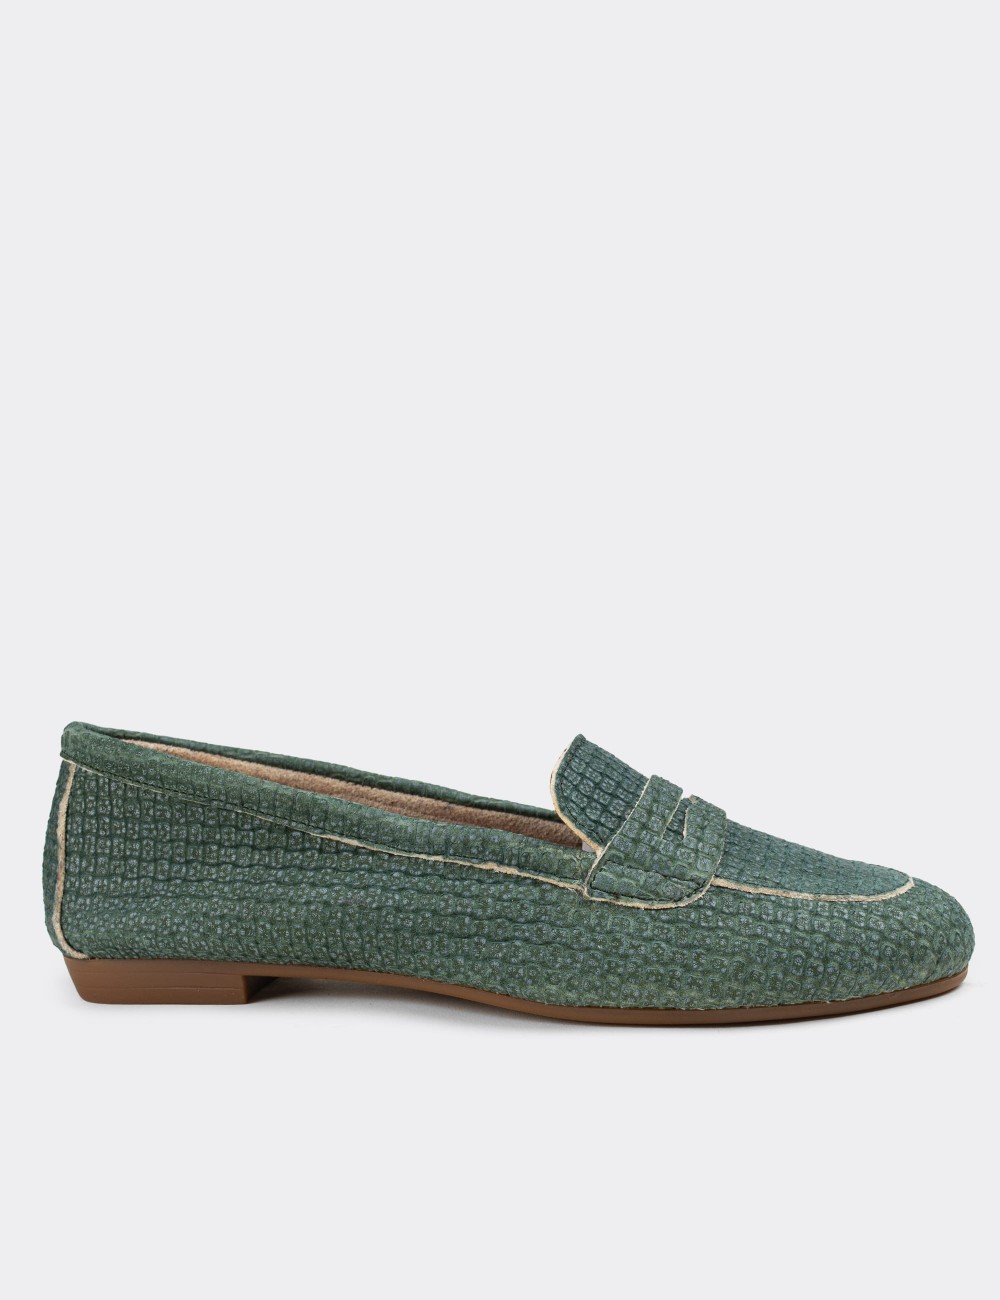 Green Nubuck Leather Loafers - E3202ZYSLC05